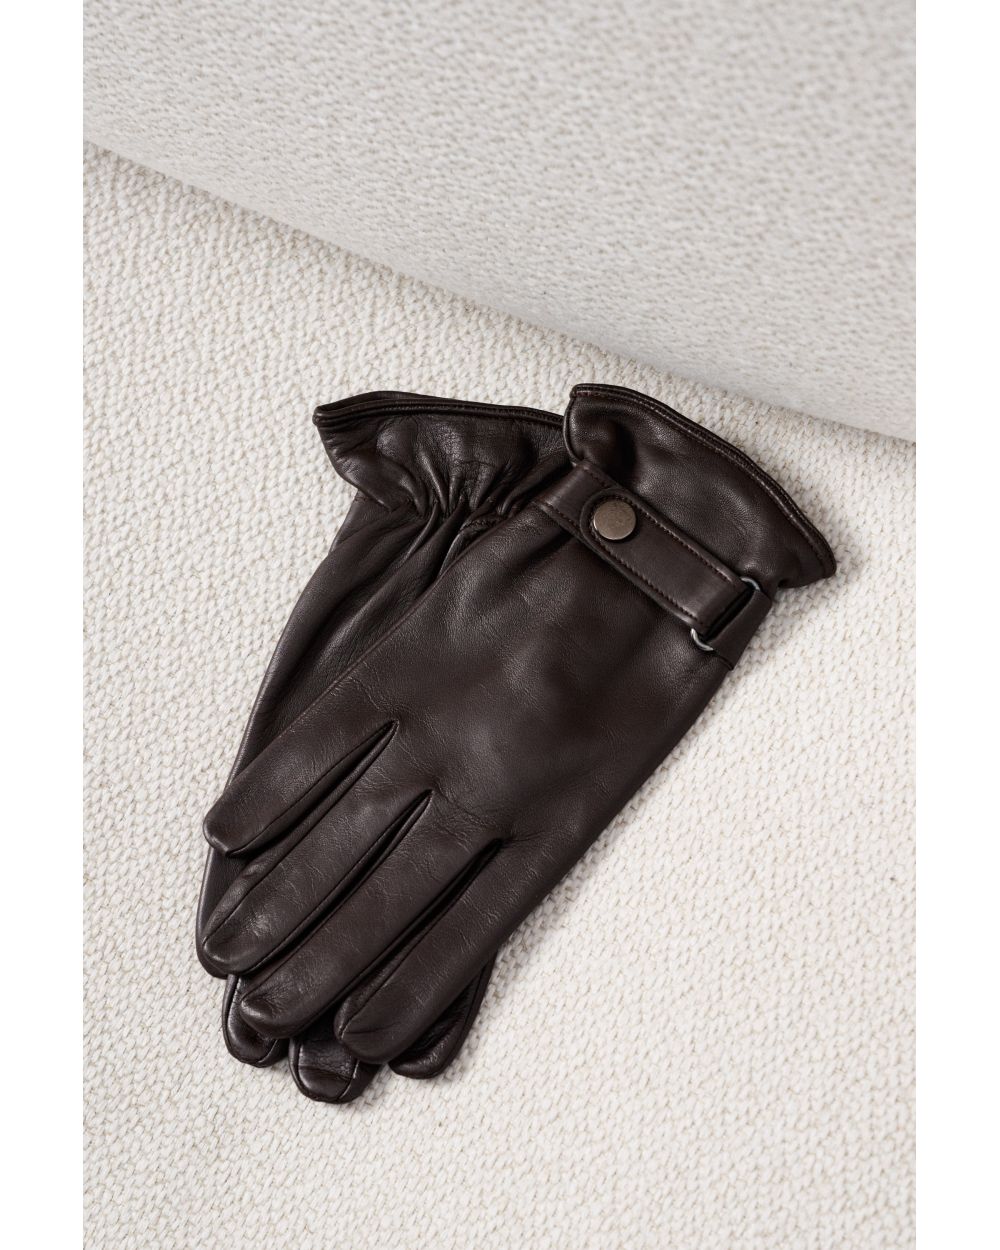 Перчатки мужские кожаные коричневые на резинке с застежкой